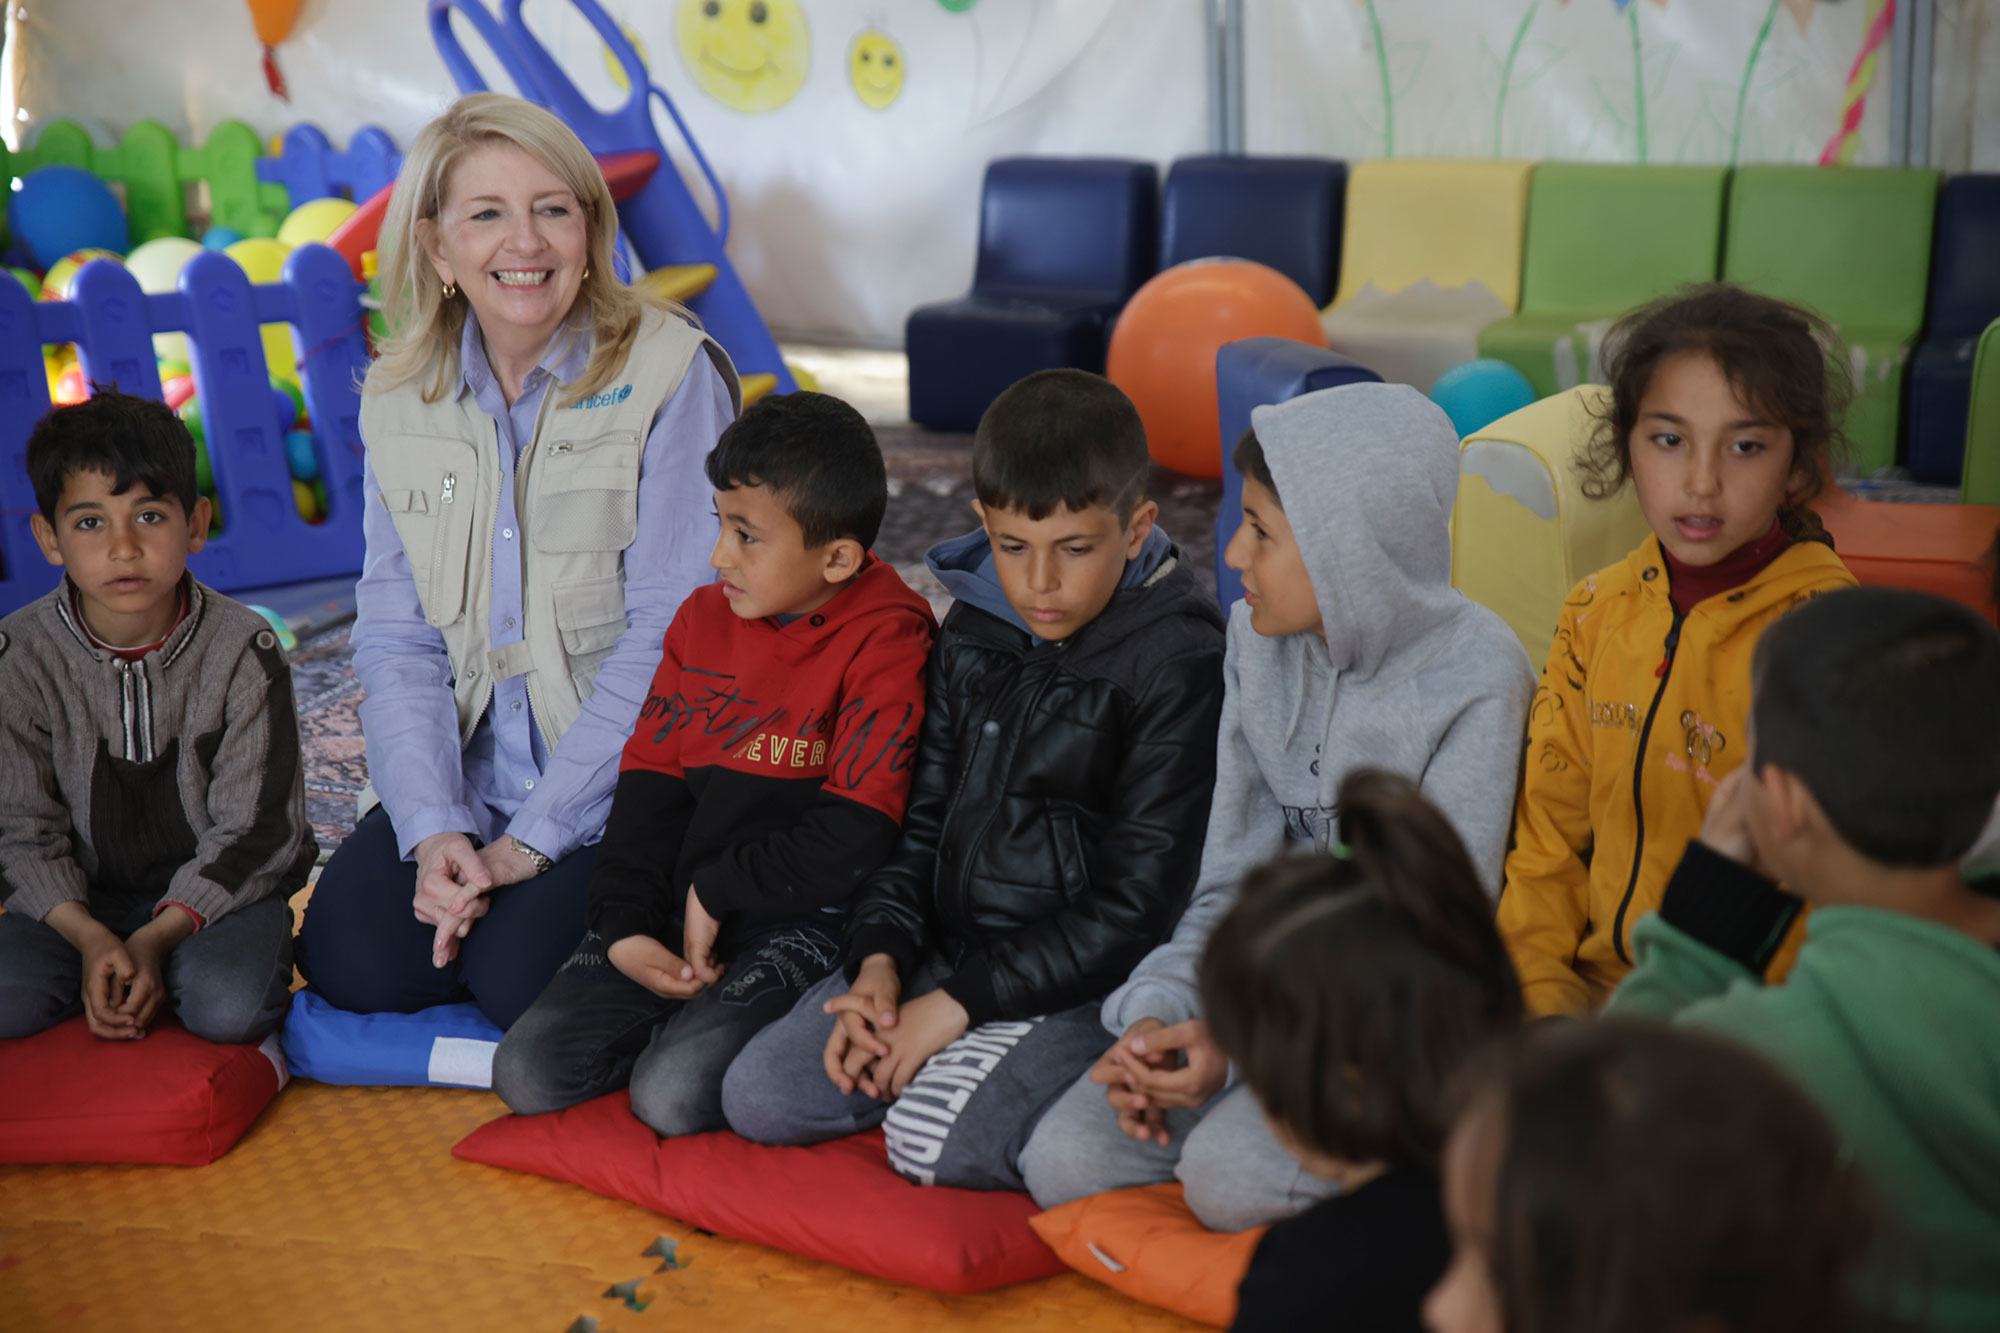 المديرة التنفيذية لليونيسف كاثرين راسل تشارك في جلسة للدعم النفسي والاجتماعي في كهرمان مرعش بتركيا، مع أطفال نجوا من الزلزال المدمر الأخير.